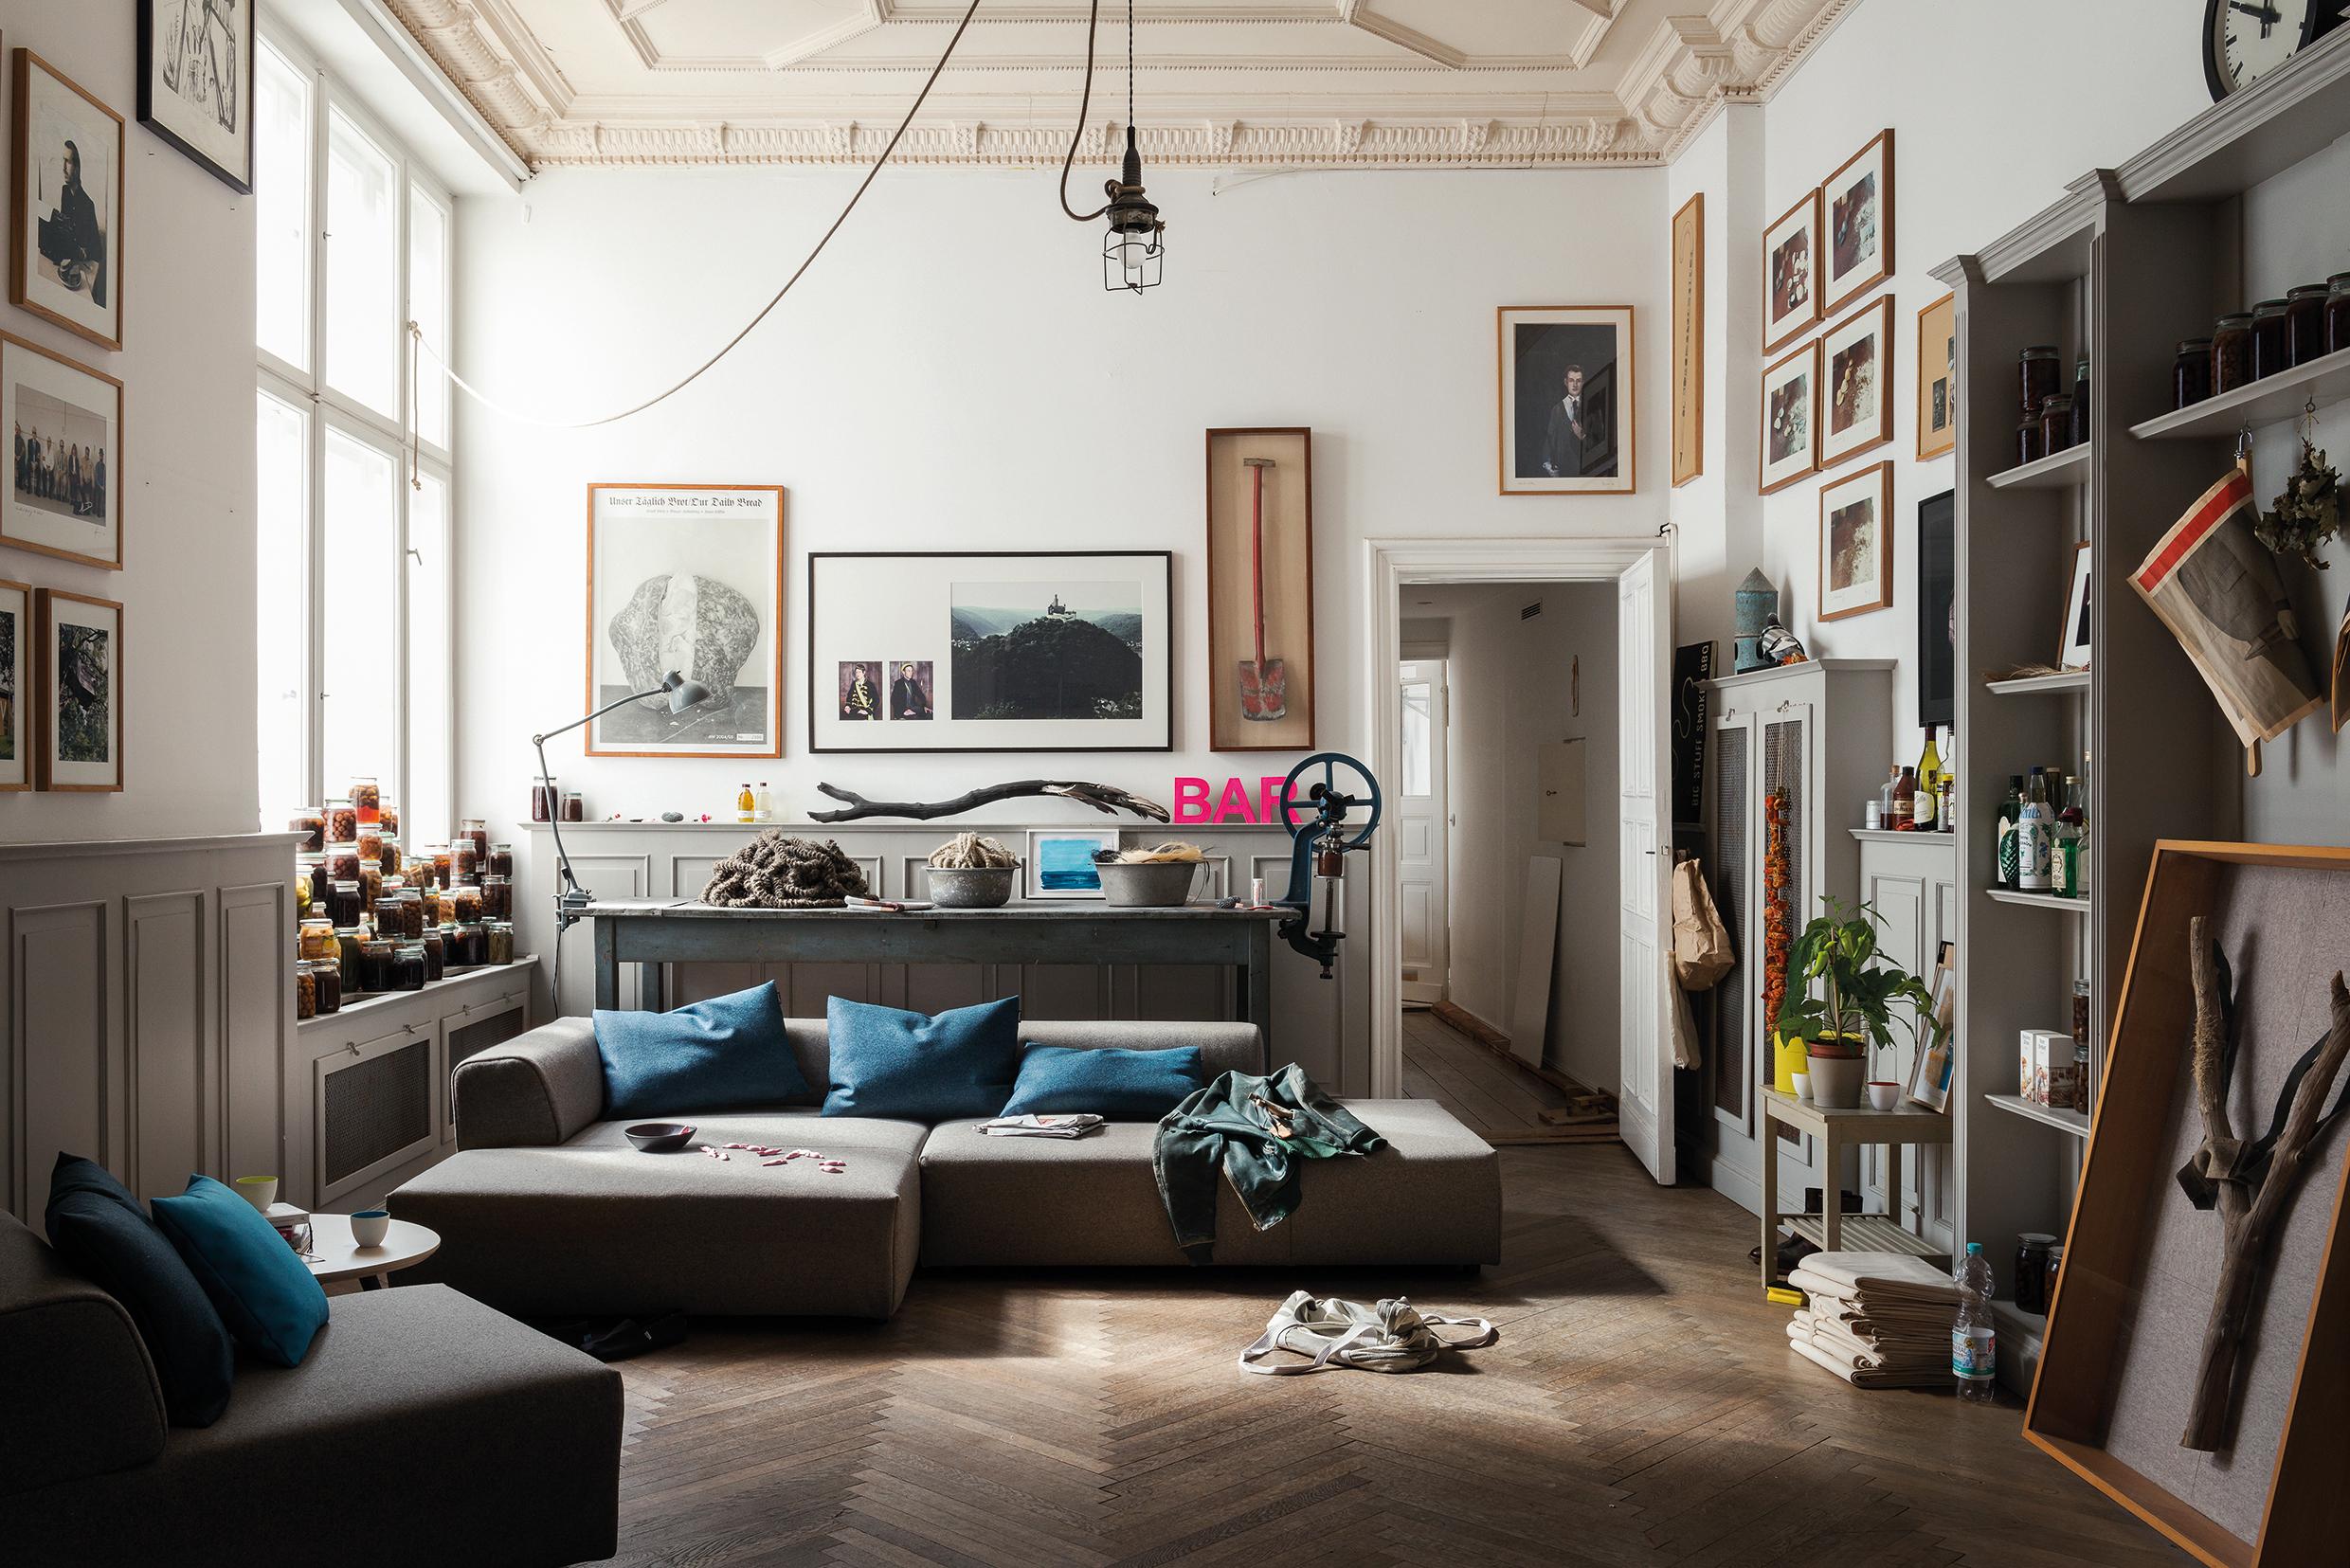 Außergewöhnliche Deko als Blickfang #wandregal #stilmix #sofa #braunessofa #zimmergestaltung ©Rolf Benz